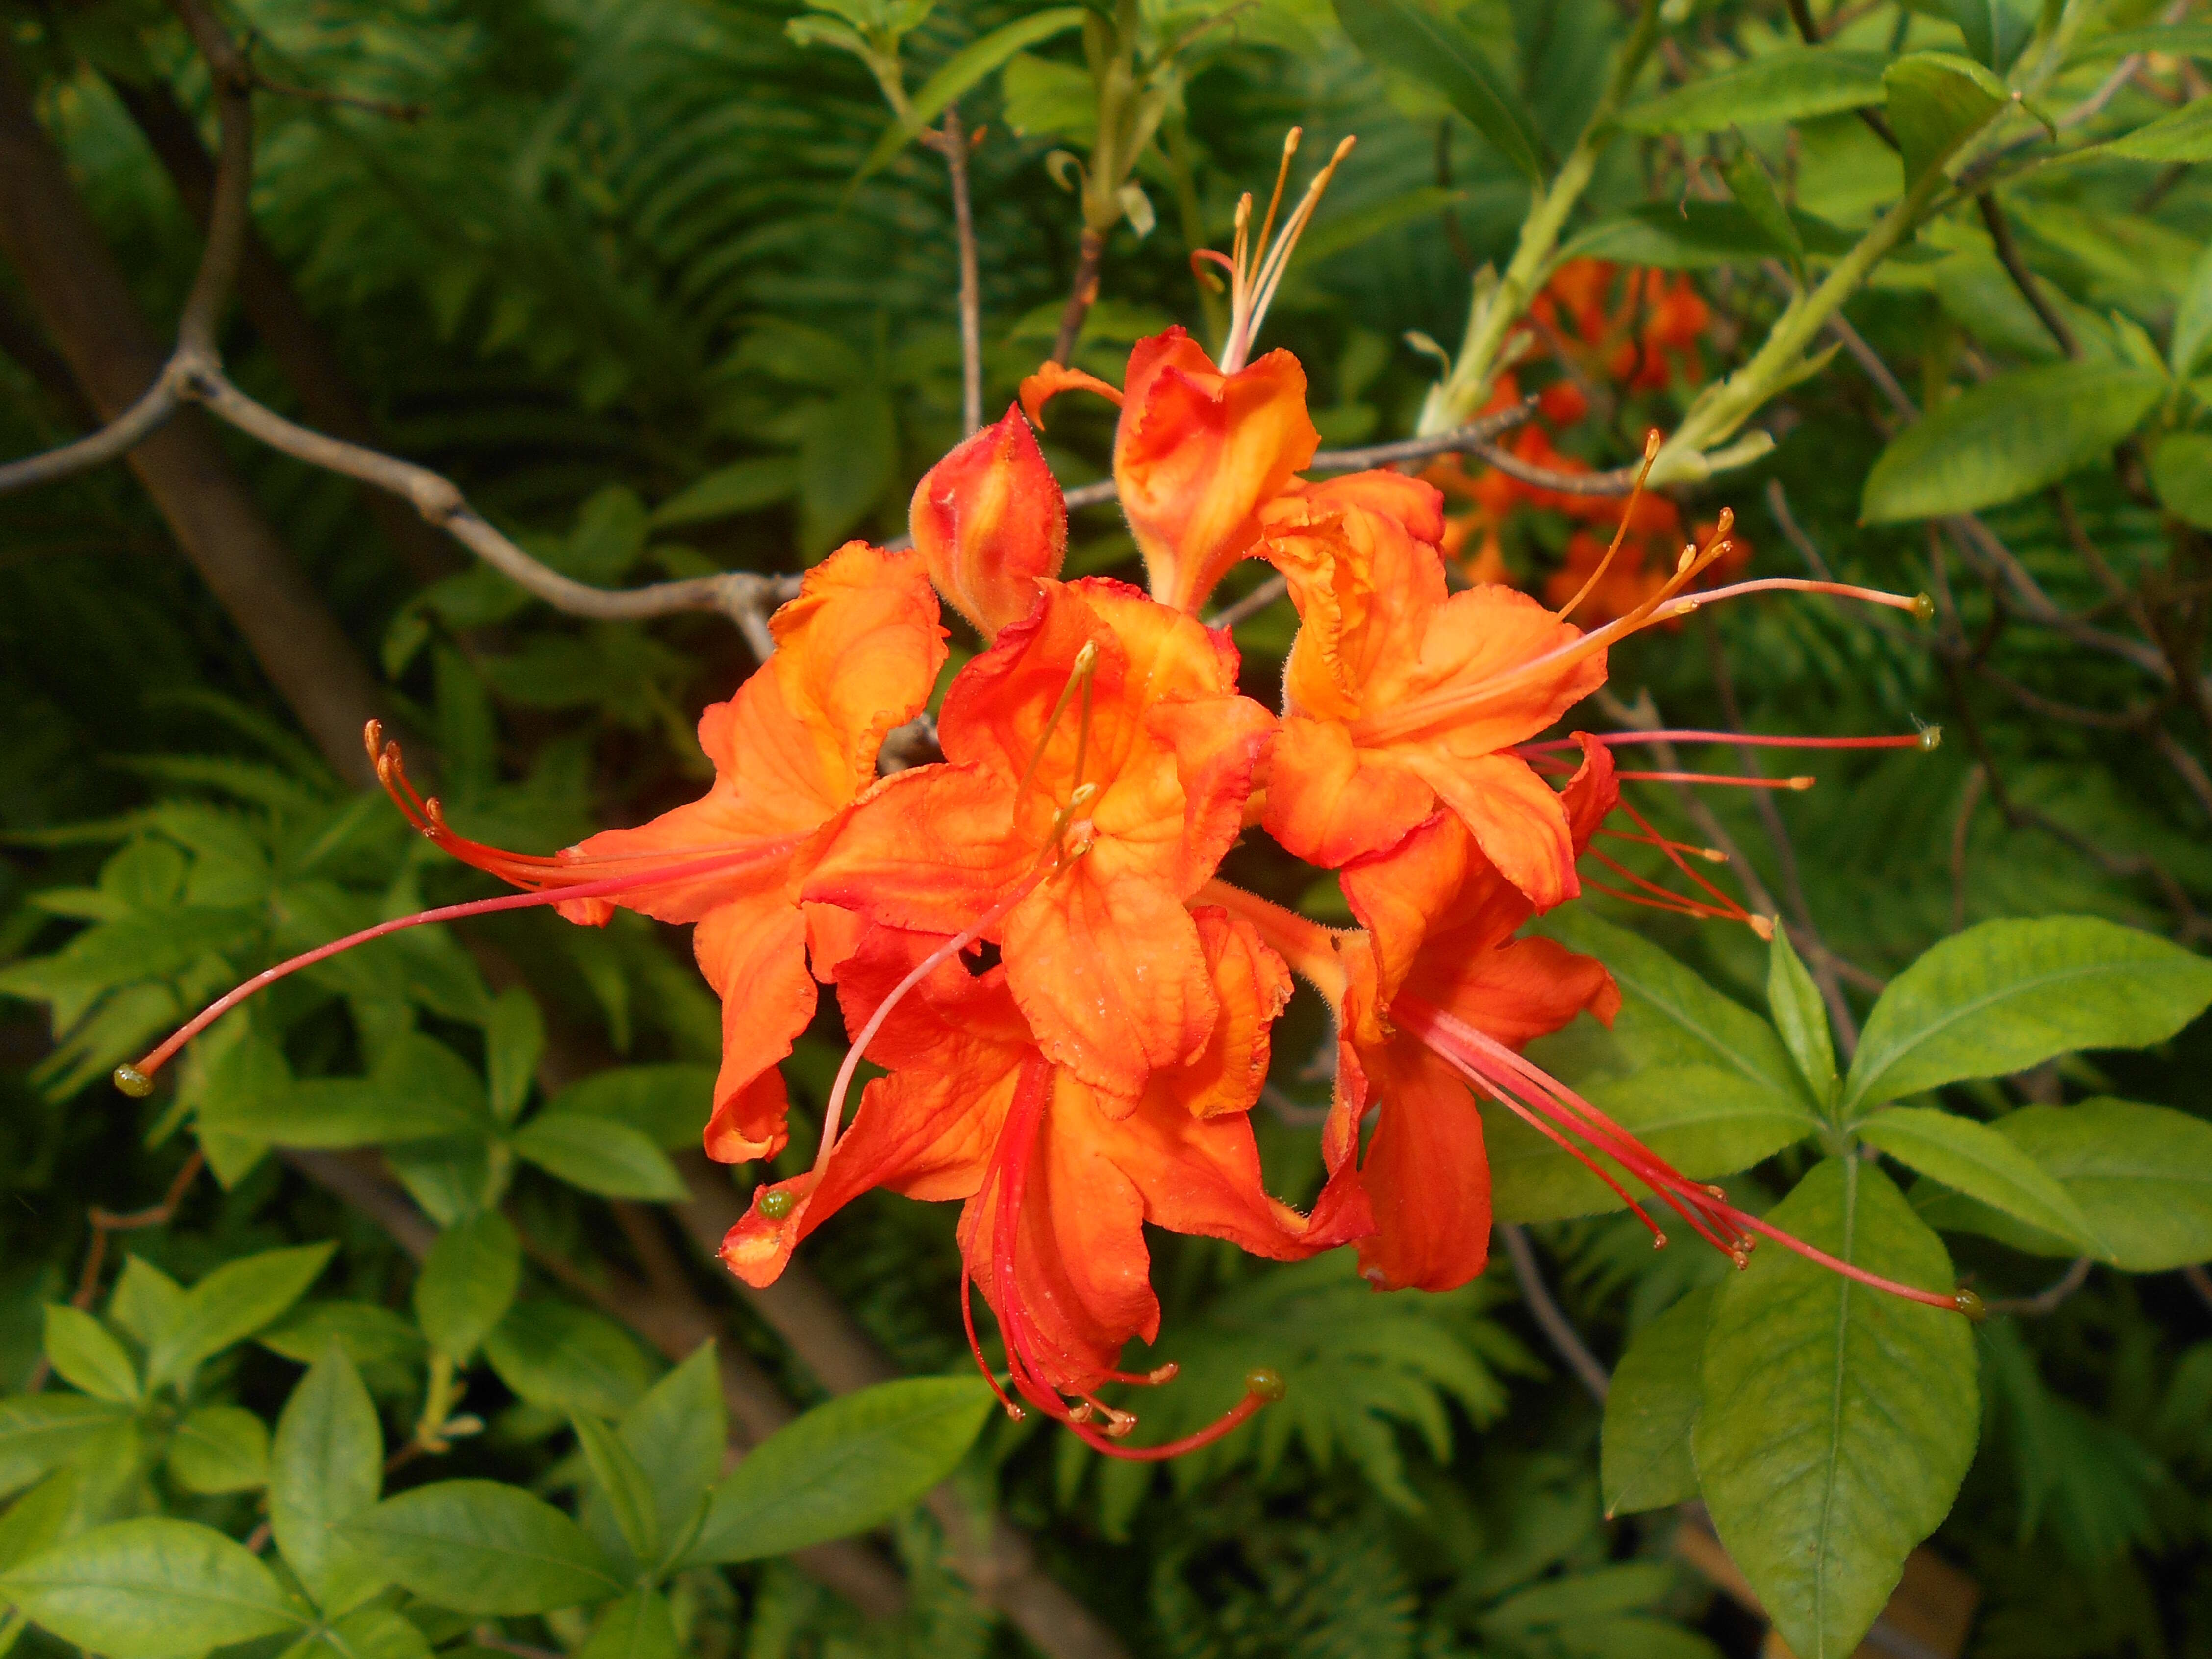 Image of flame azalea